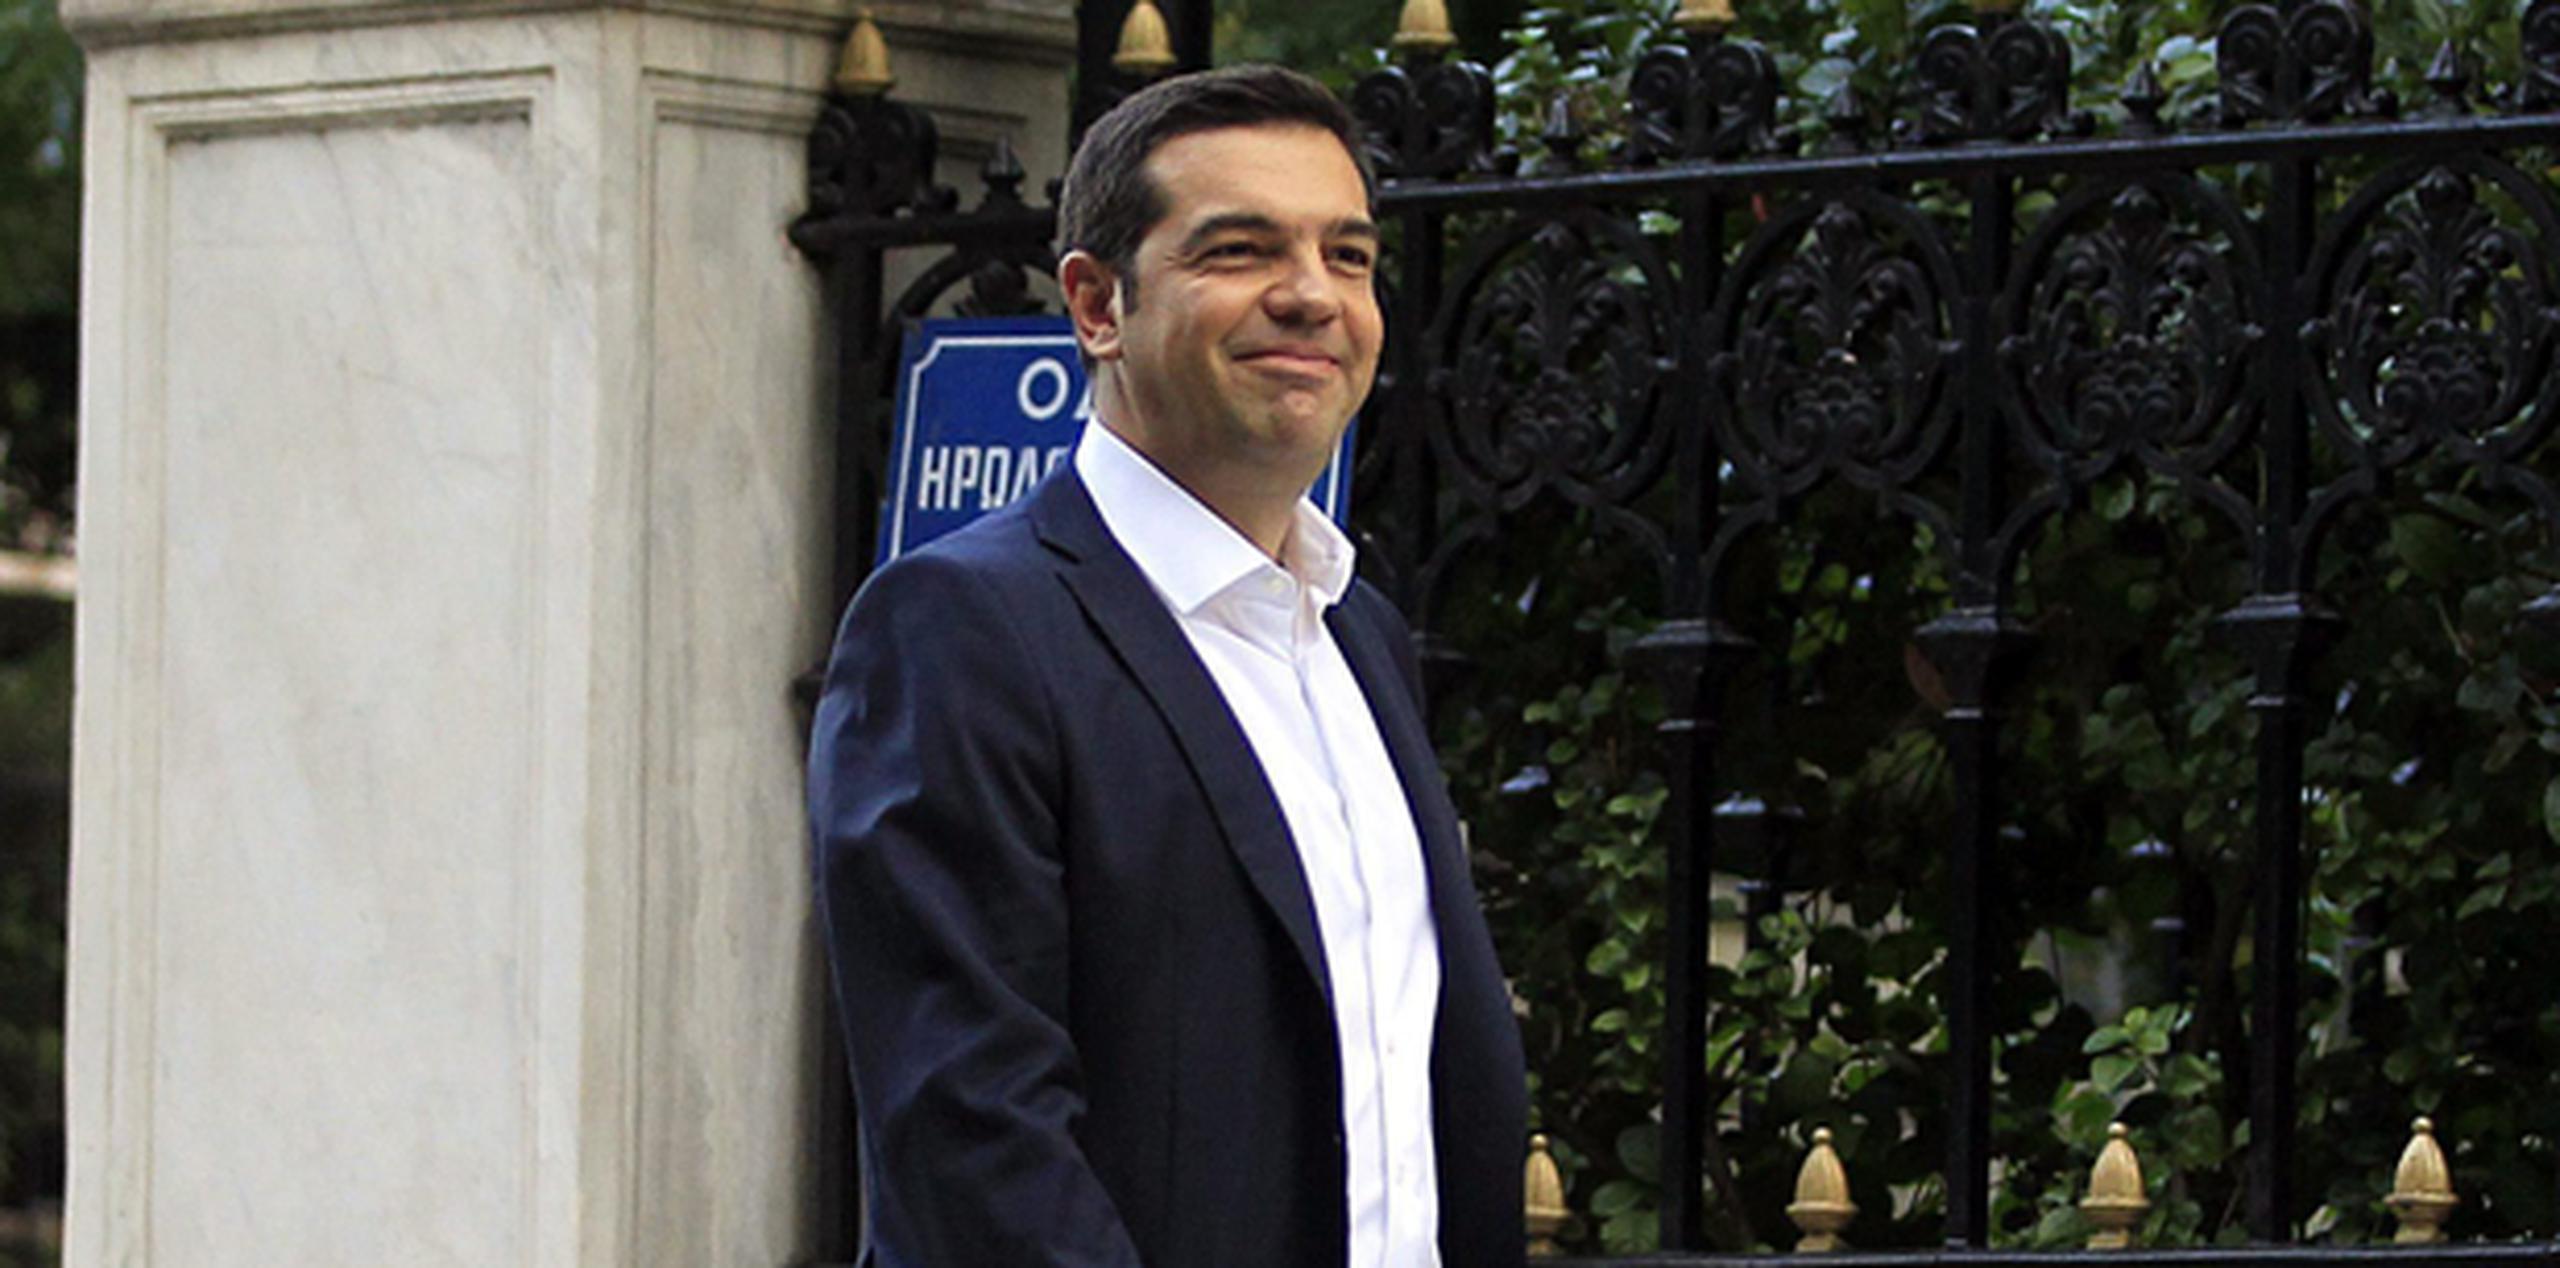 Al igual que hizo el 26 de enero, tras las primeras elecciones en las que ganó Syriza, tampoco hoy Tsipras prestó el juramento religioso, como es tradicional en la política griega, sino solamente civil. (EFE)